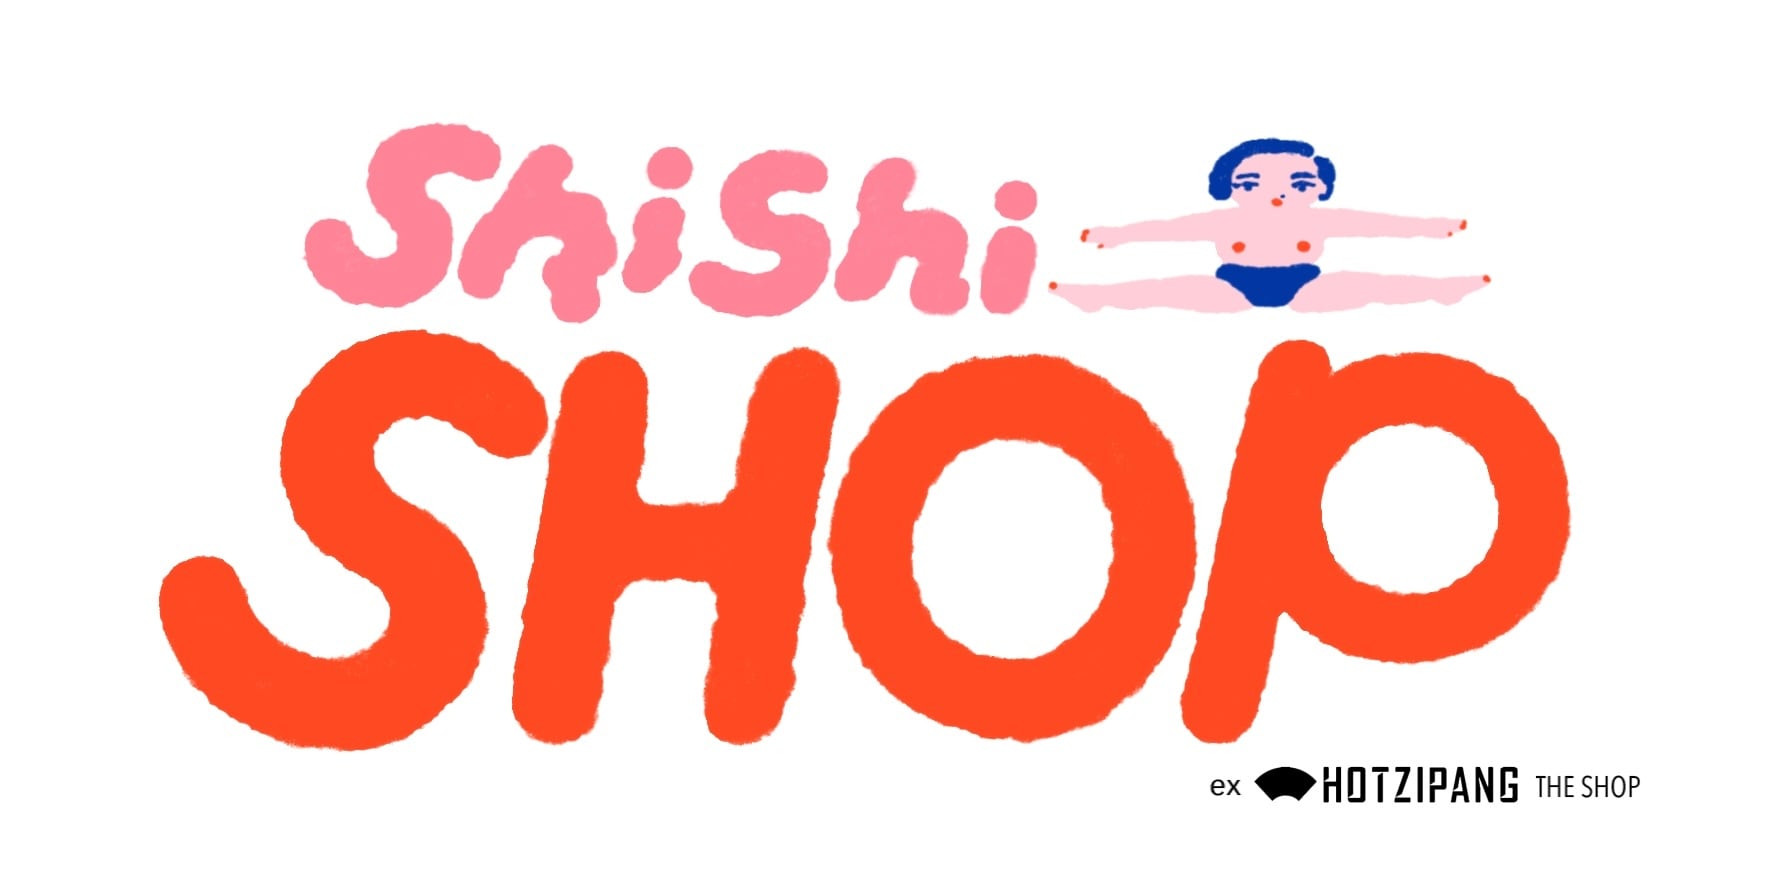 SHISHI SHOP